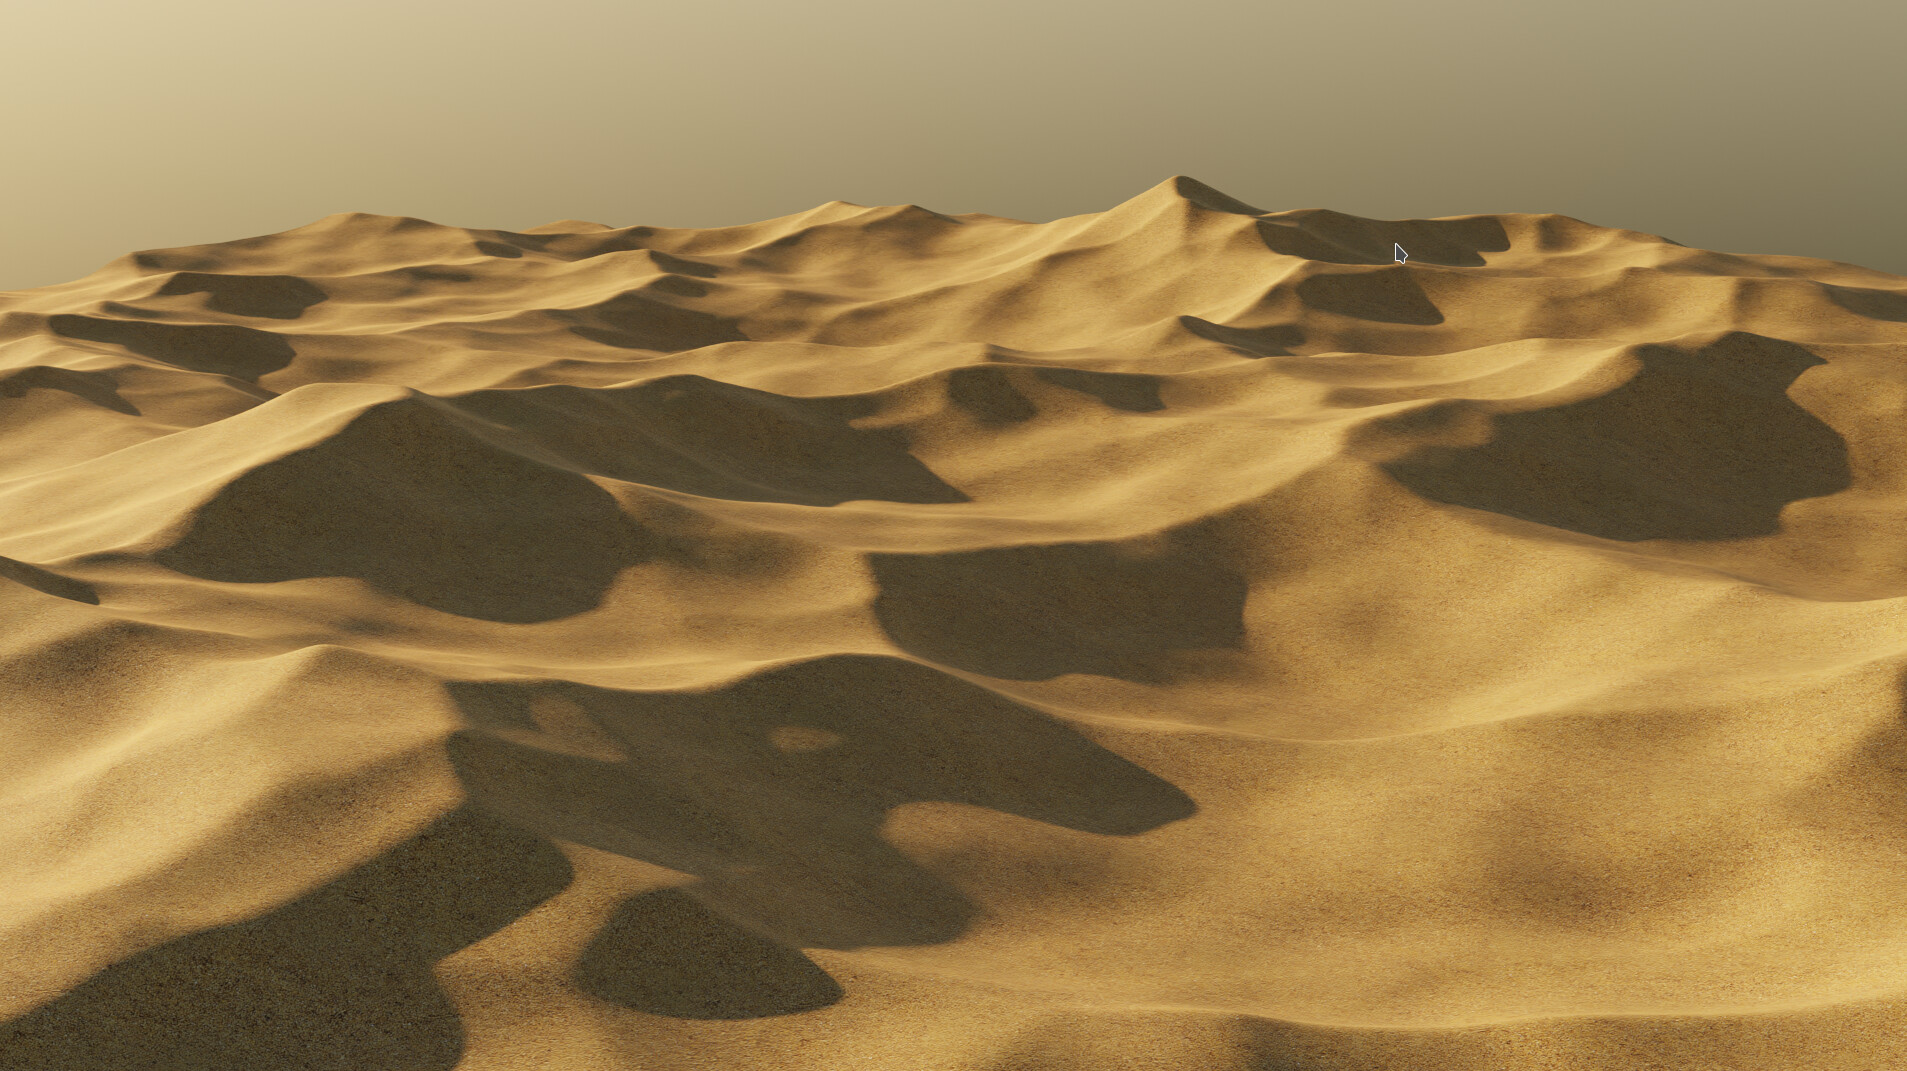 footsteps Voltage mosaic Surreal desert landscape - Finished Projects - Blender Artists Community